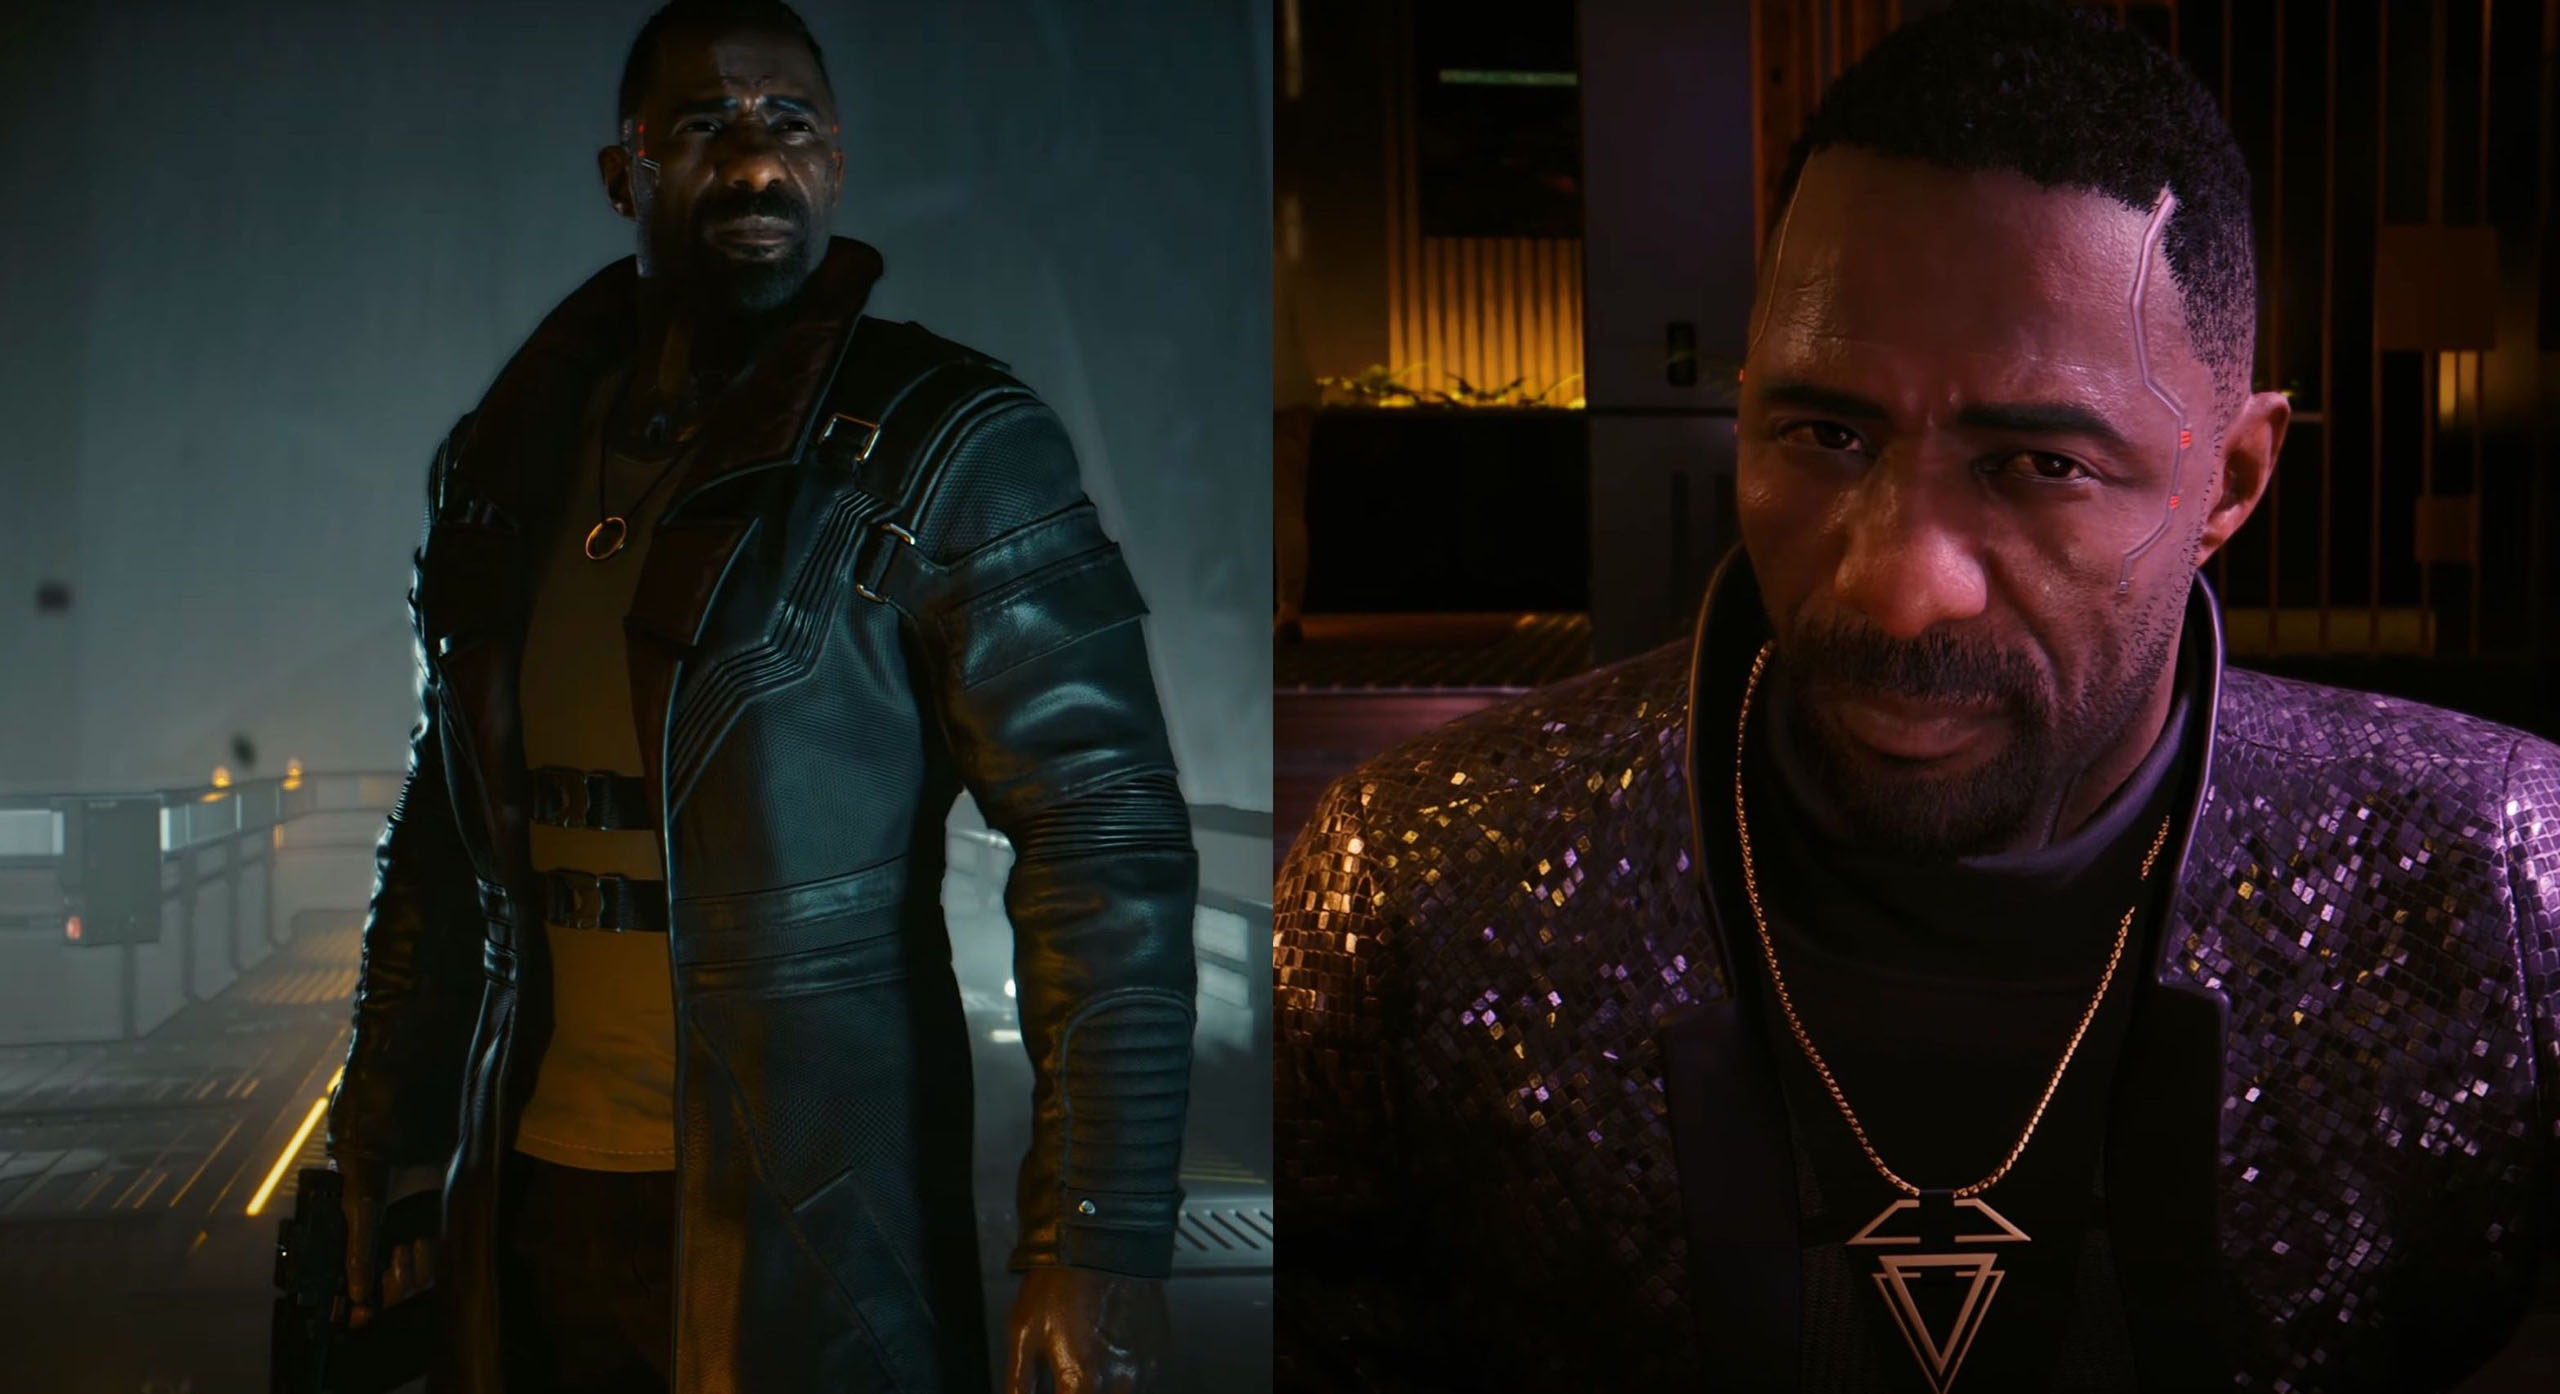 Idris Elba ist eine interessante Besatzung, weil er viele Rollen spielen cann: Der harte Haudegen, der einsame Wolf in Luther. Aber auch den Charme eines James Bond versprühen cann, was wir hier in dieser Szene sehen. Mit ihm cann CD Projekt viel variieren.